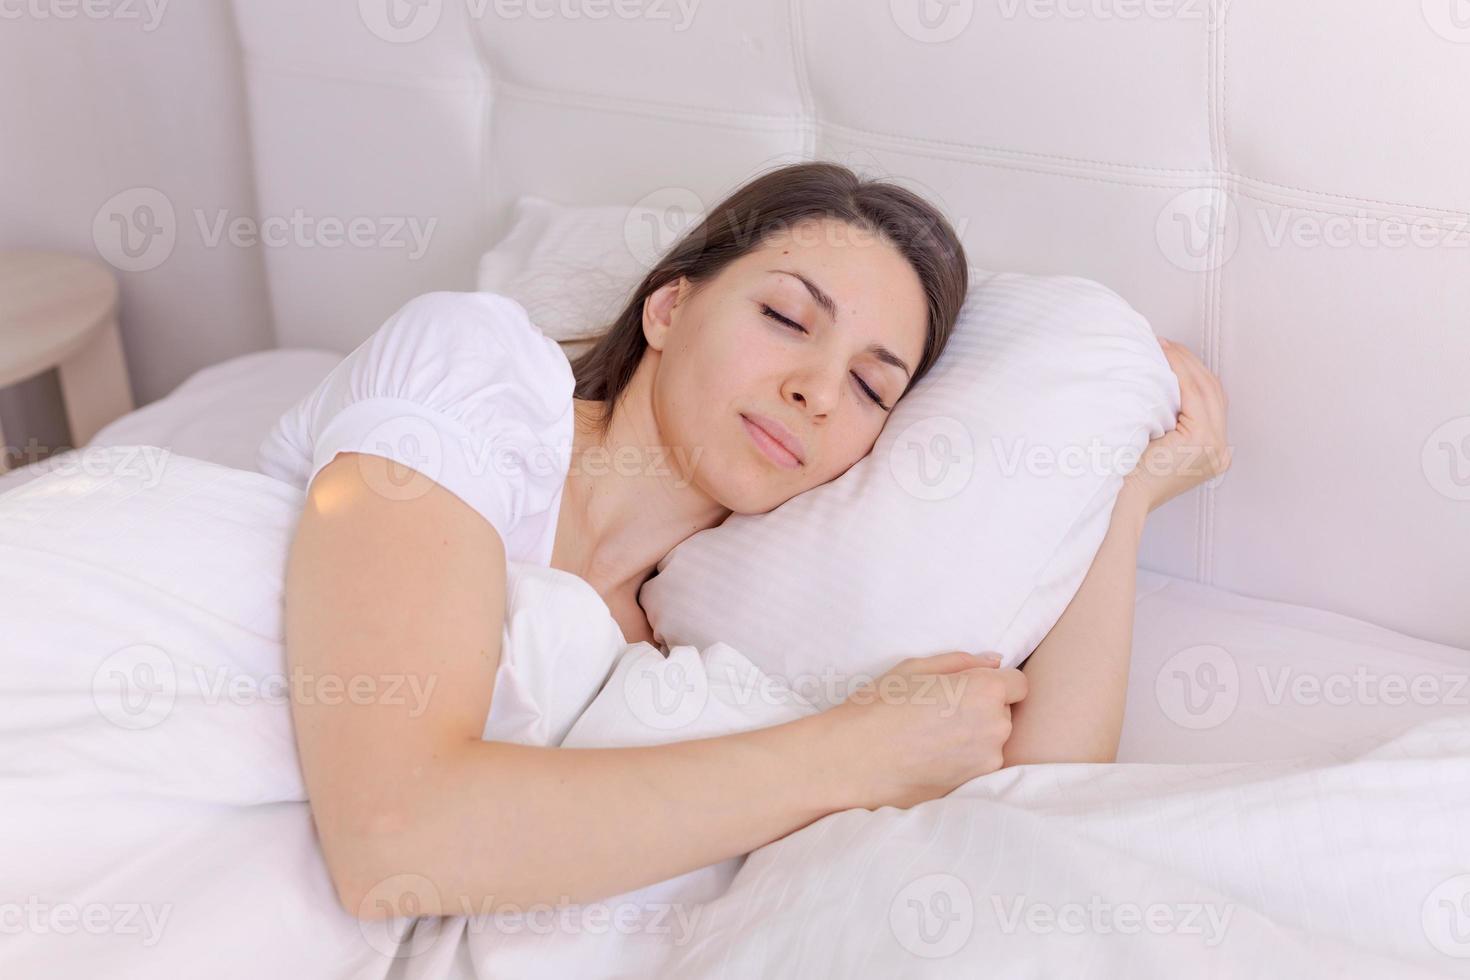 fotografia jovem dormindo deita na cama com os olhos fechados em um branco foto